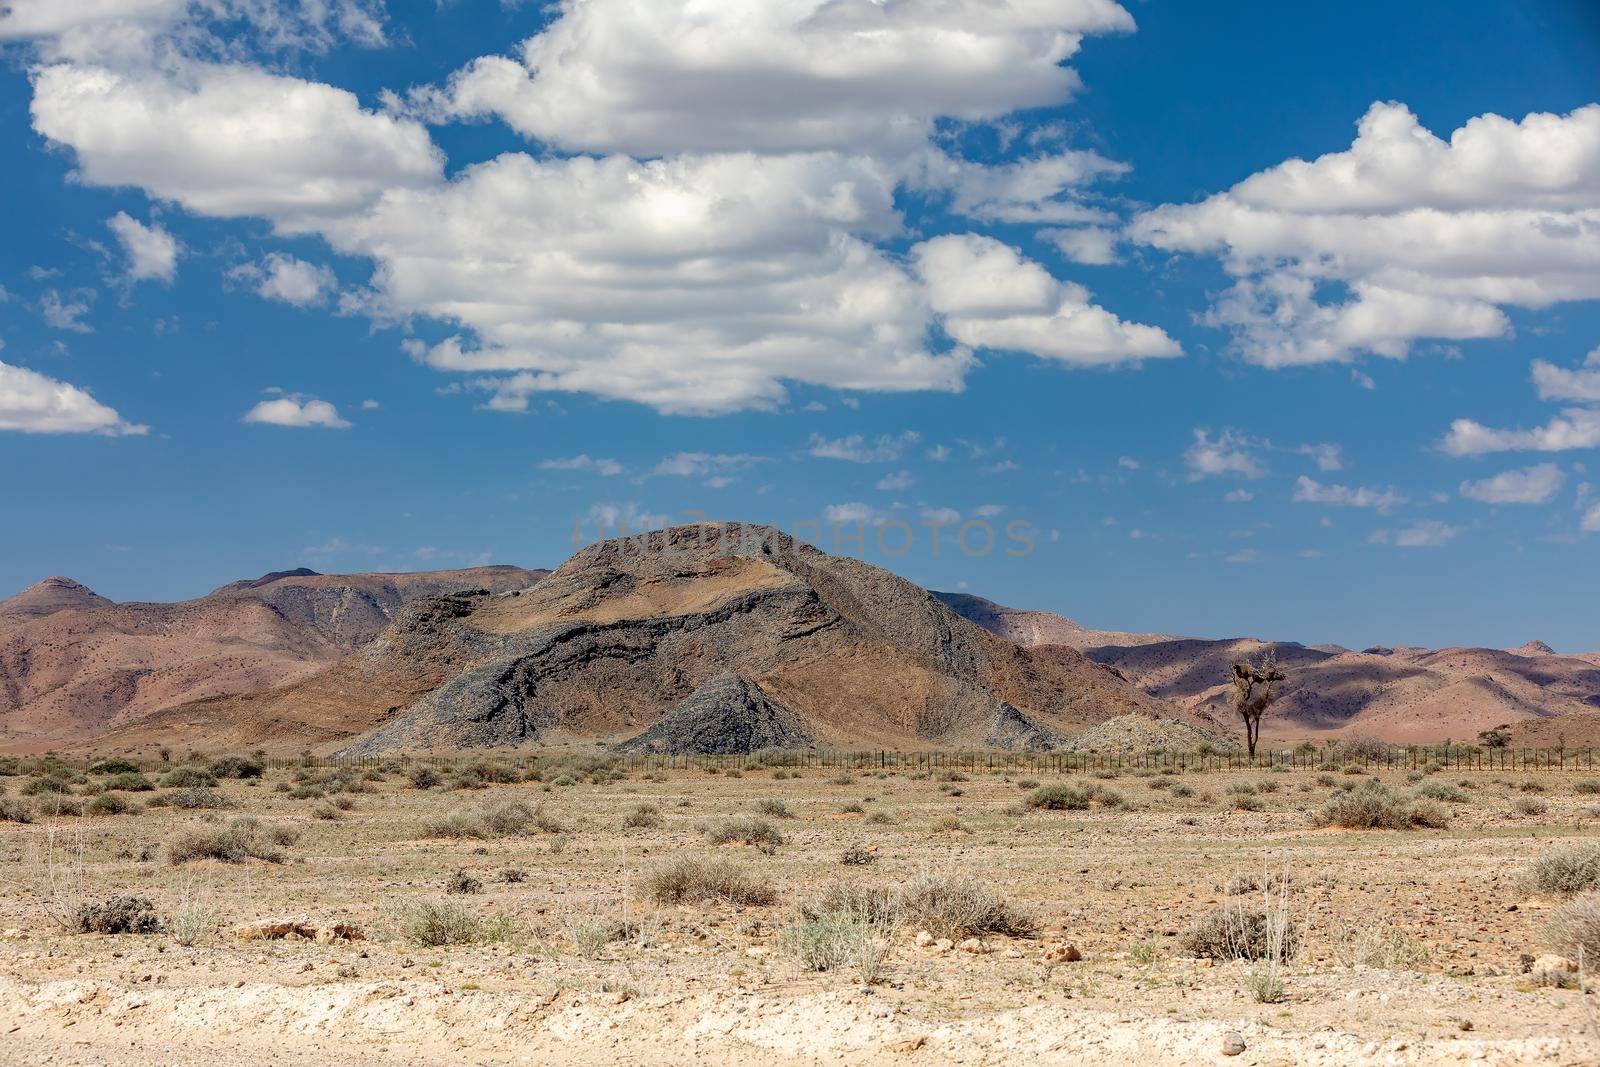 Namib desert, Namibia Africa landscape by artush